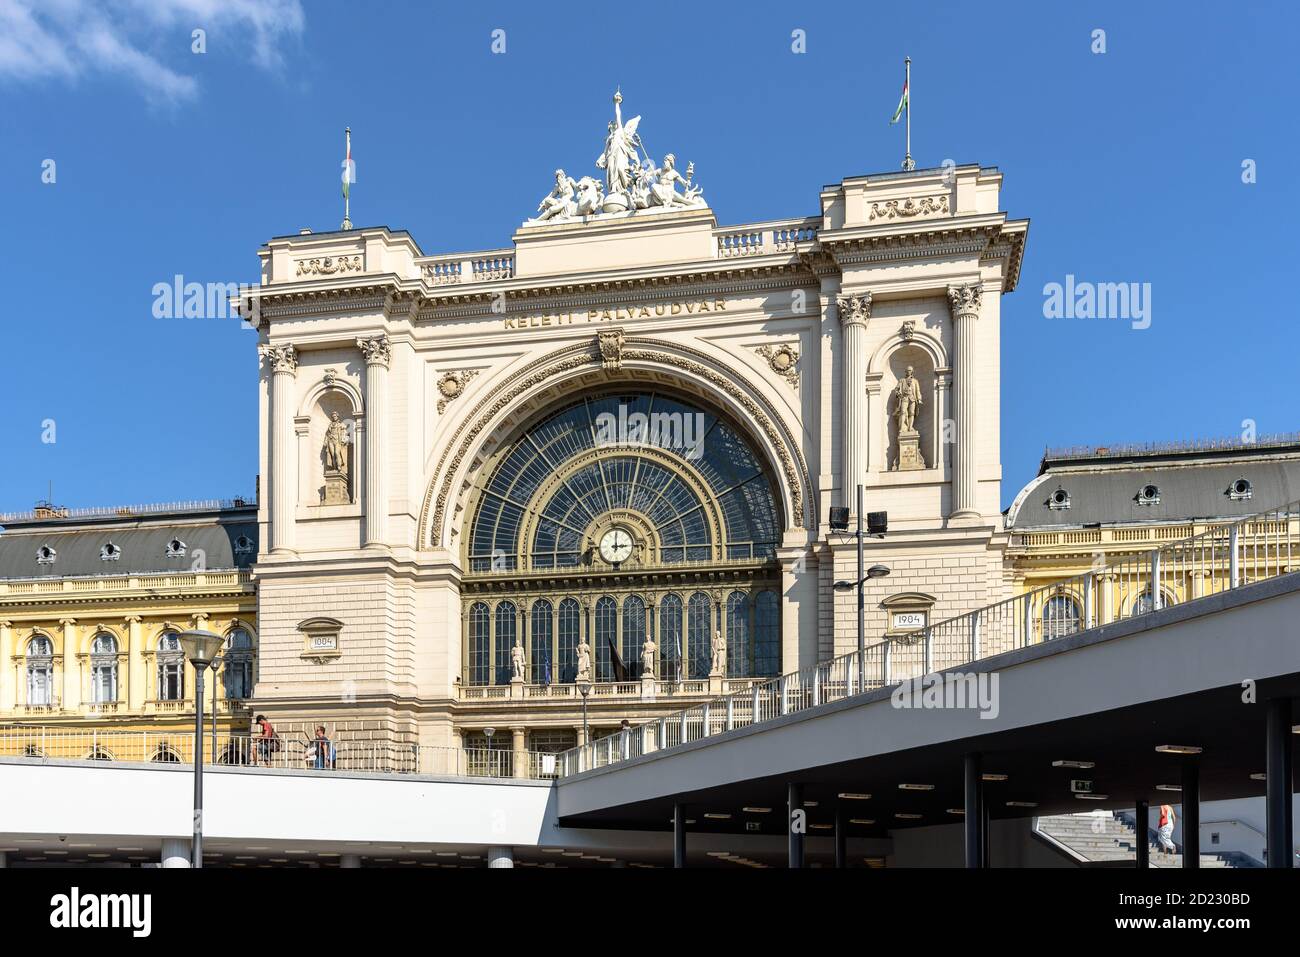 Le terminal ferroviaire Keleti de Budapest est construit dans un style architectural éclectique Banque D'Images